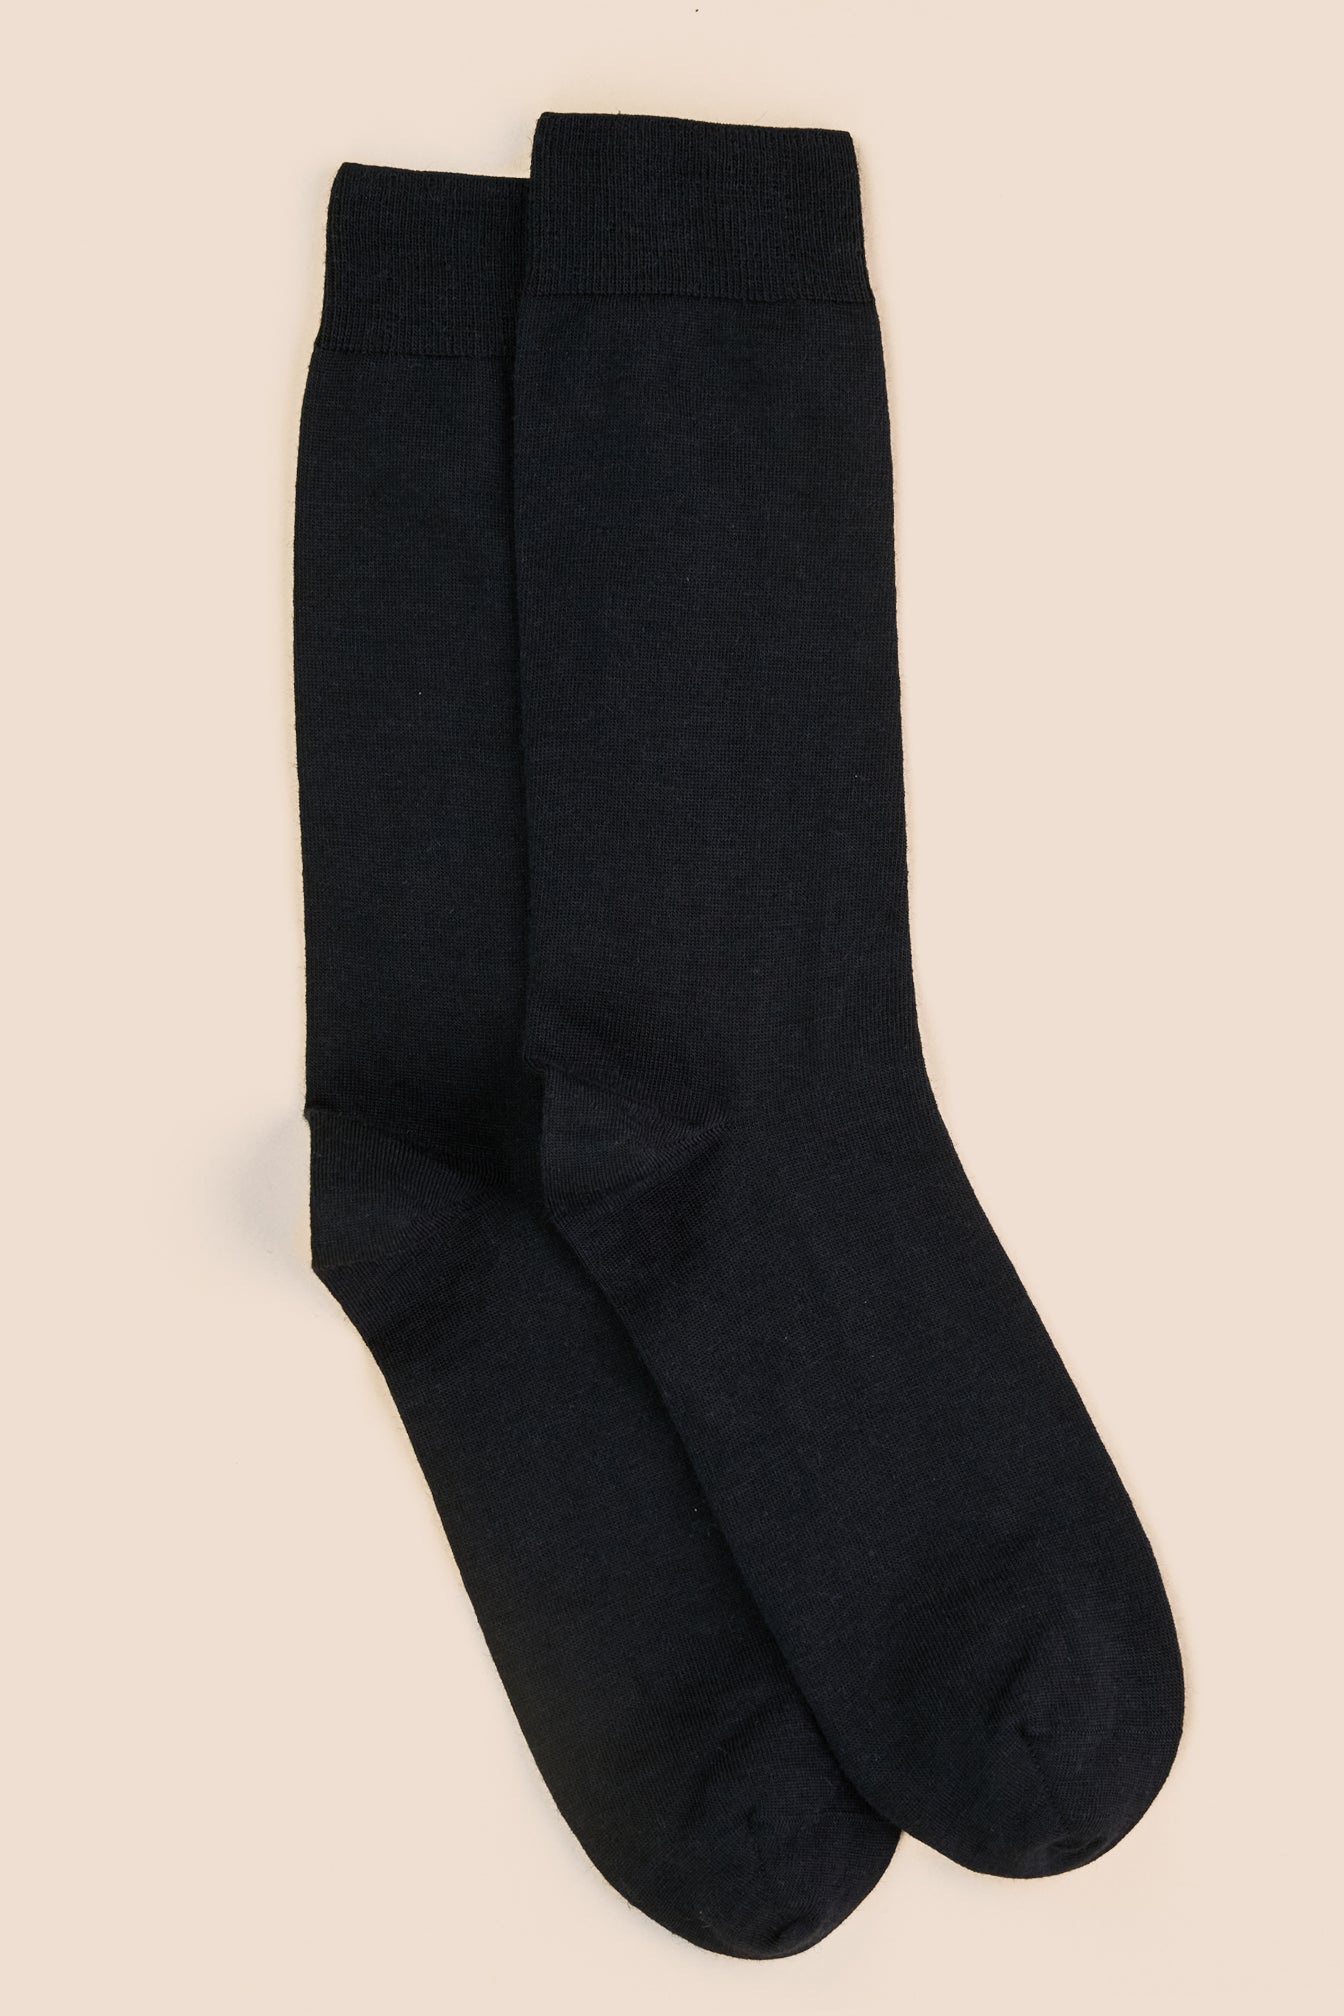 Pétrone chaussettes laine mérinos noir homme